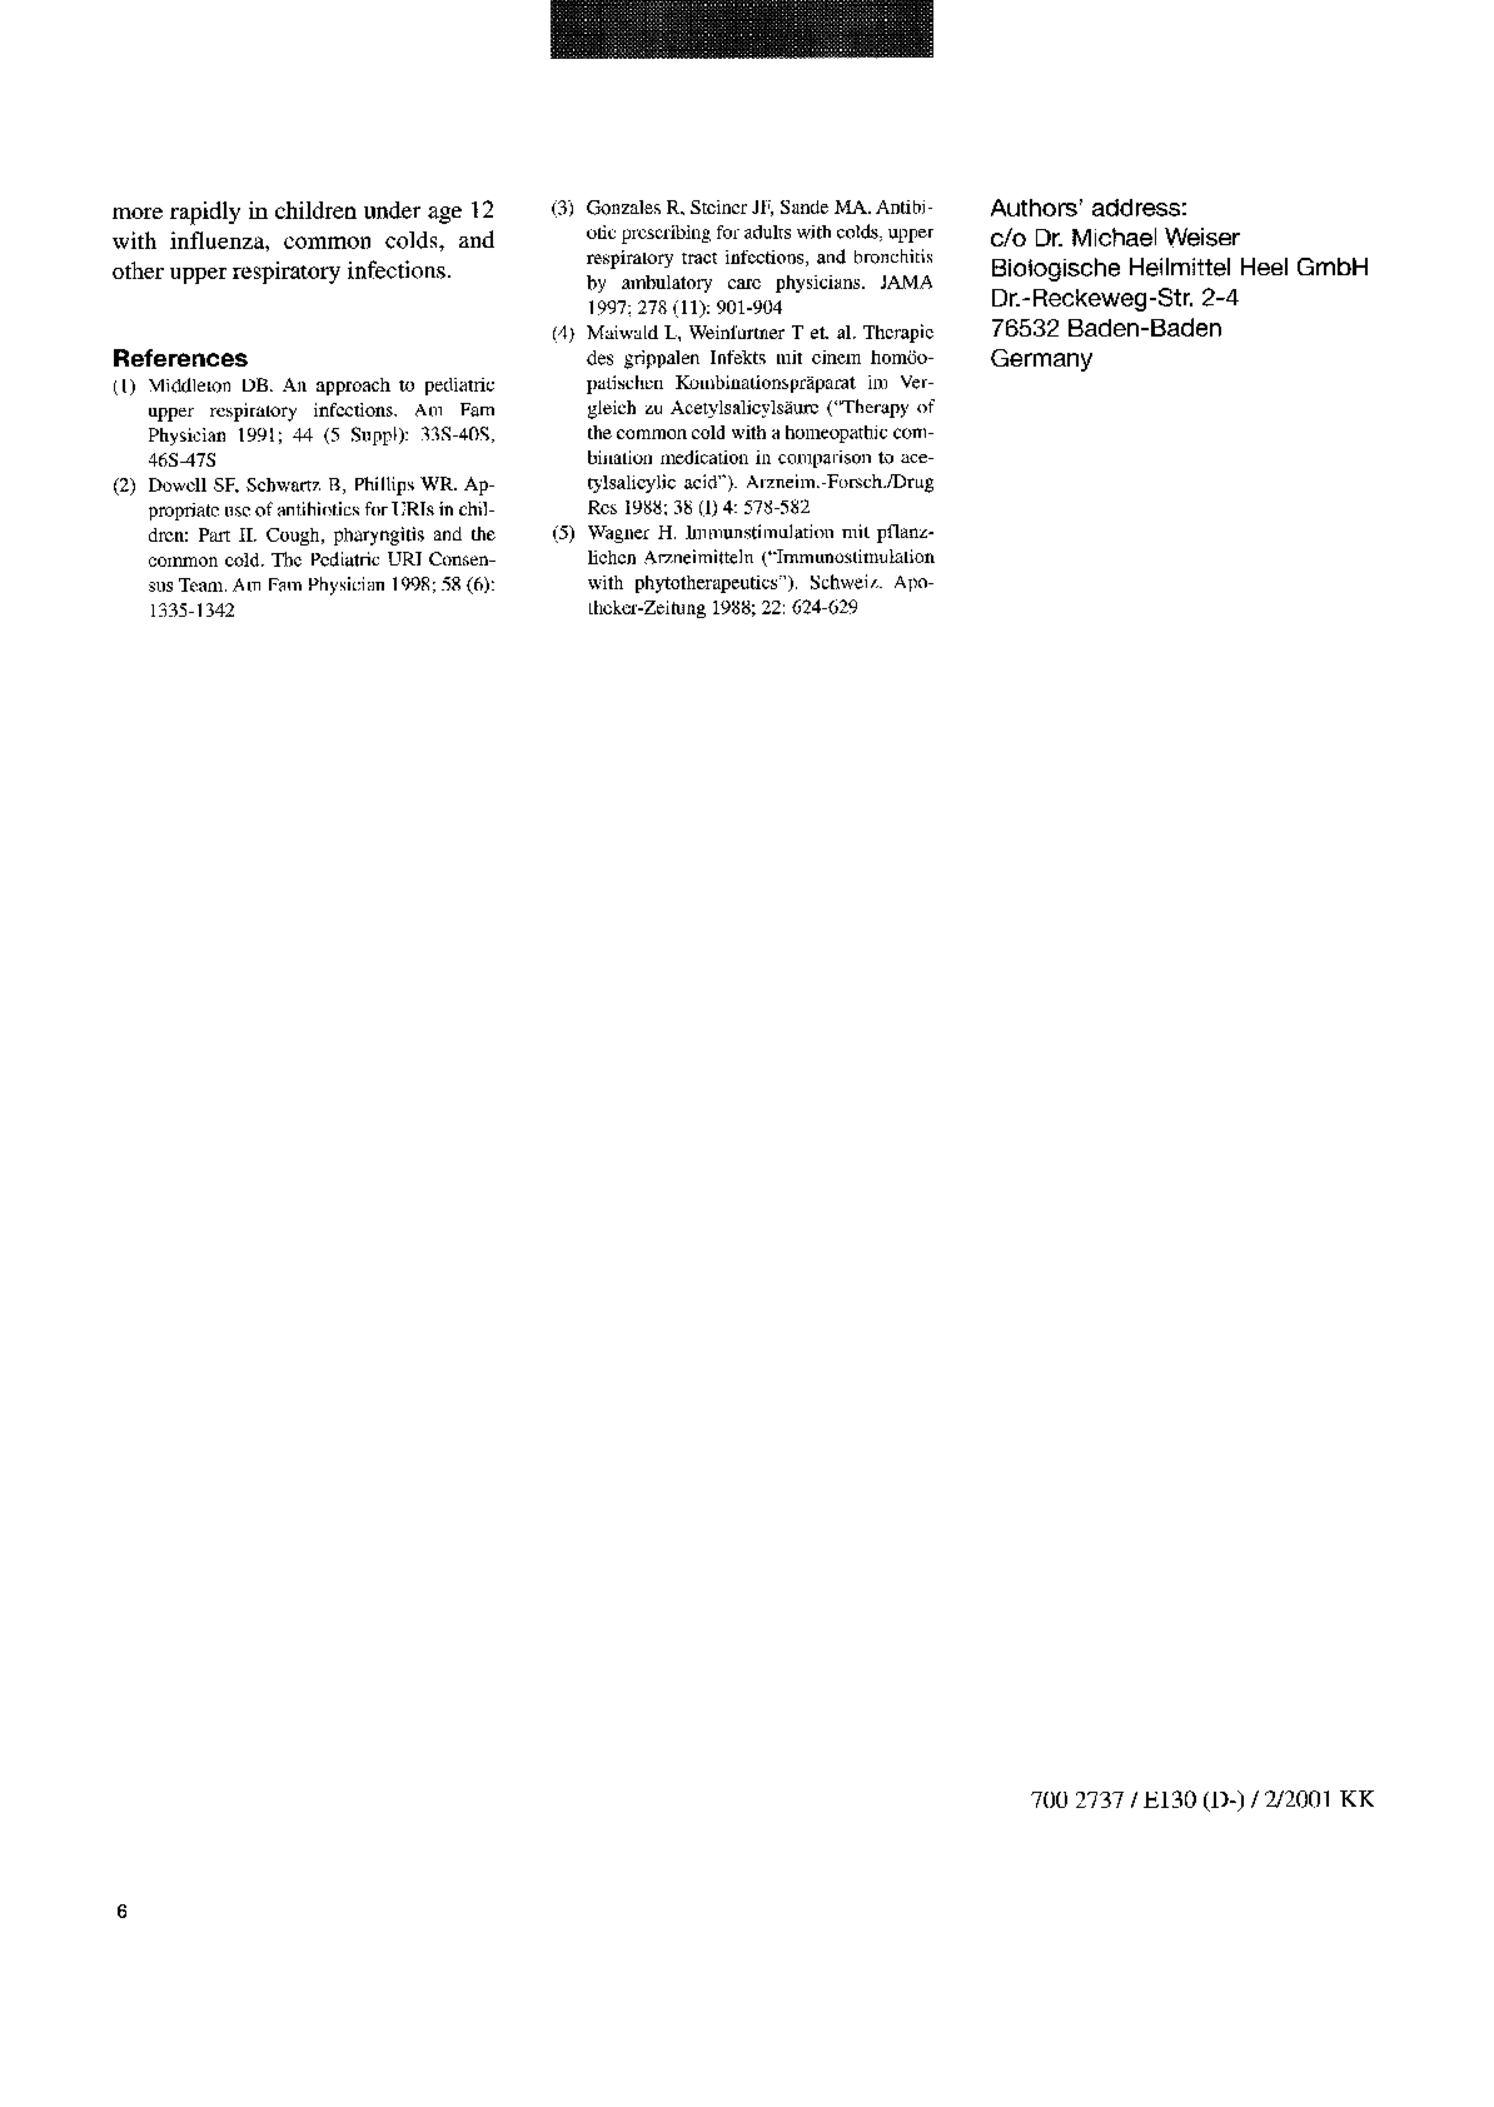 Gripp-Heel H Tabletten afbeelding van document #17, productonderzoek